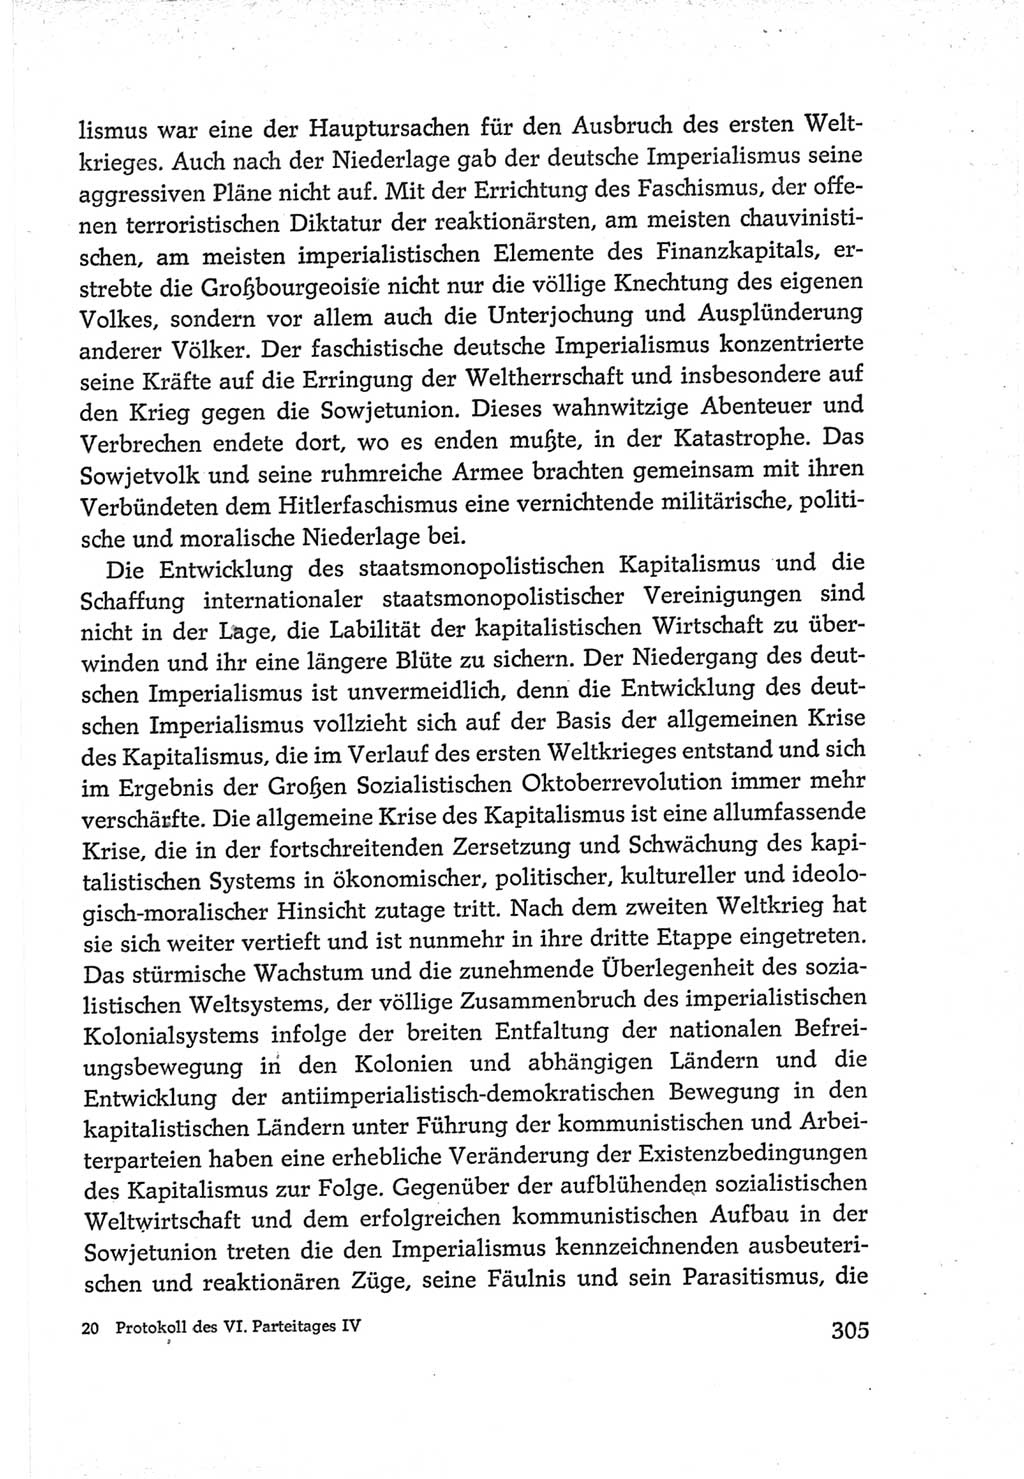 Protokoll der Verhandlungen des Ⅵ. Parteitages der Sozialistischen Einheitspartei Deutschlands (SED) [Deutsche Demokratische Republik (DDR)] 1963, Band Ⅳ, Seite 305 (Prot. Verh. Ⅵ. PT SED DDR 1963, Bd. Ⅳ, S. 305)